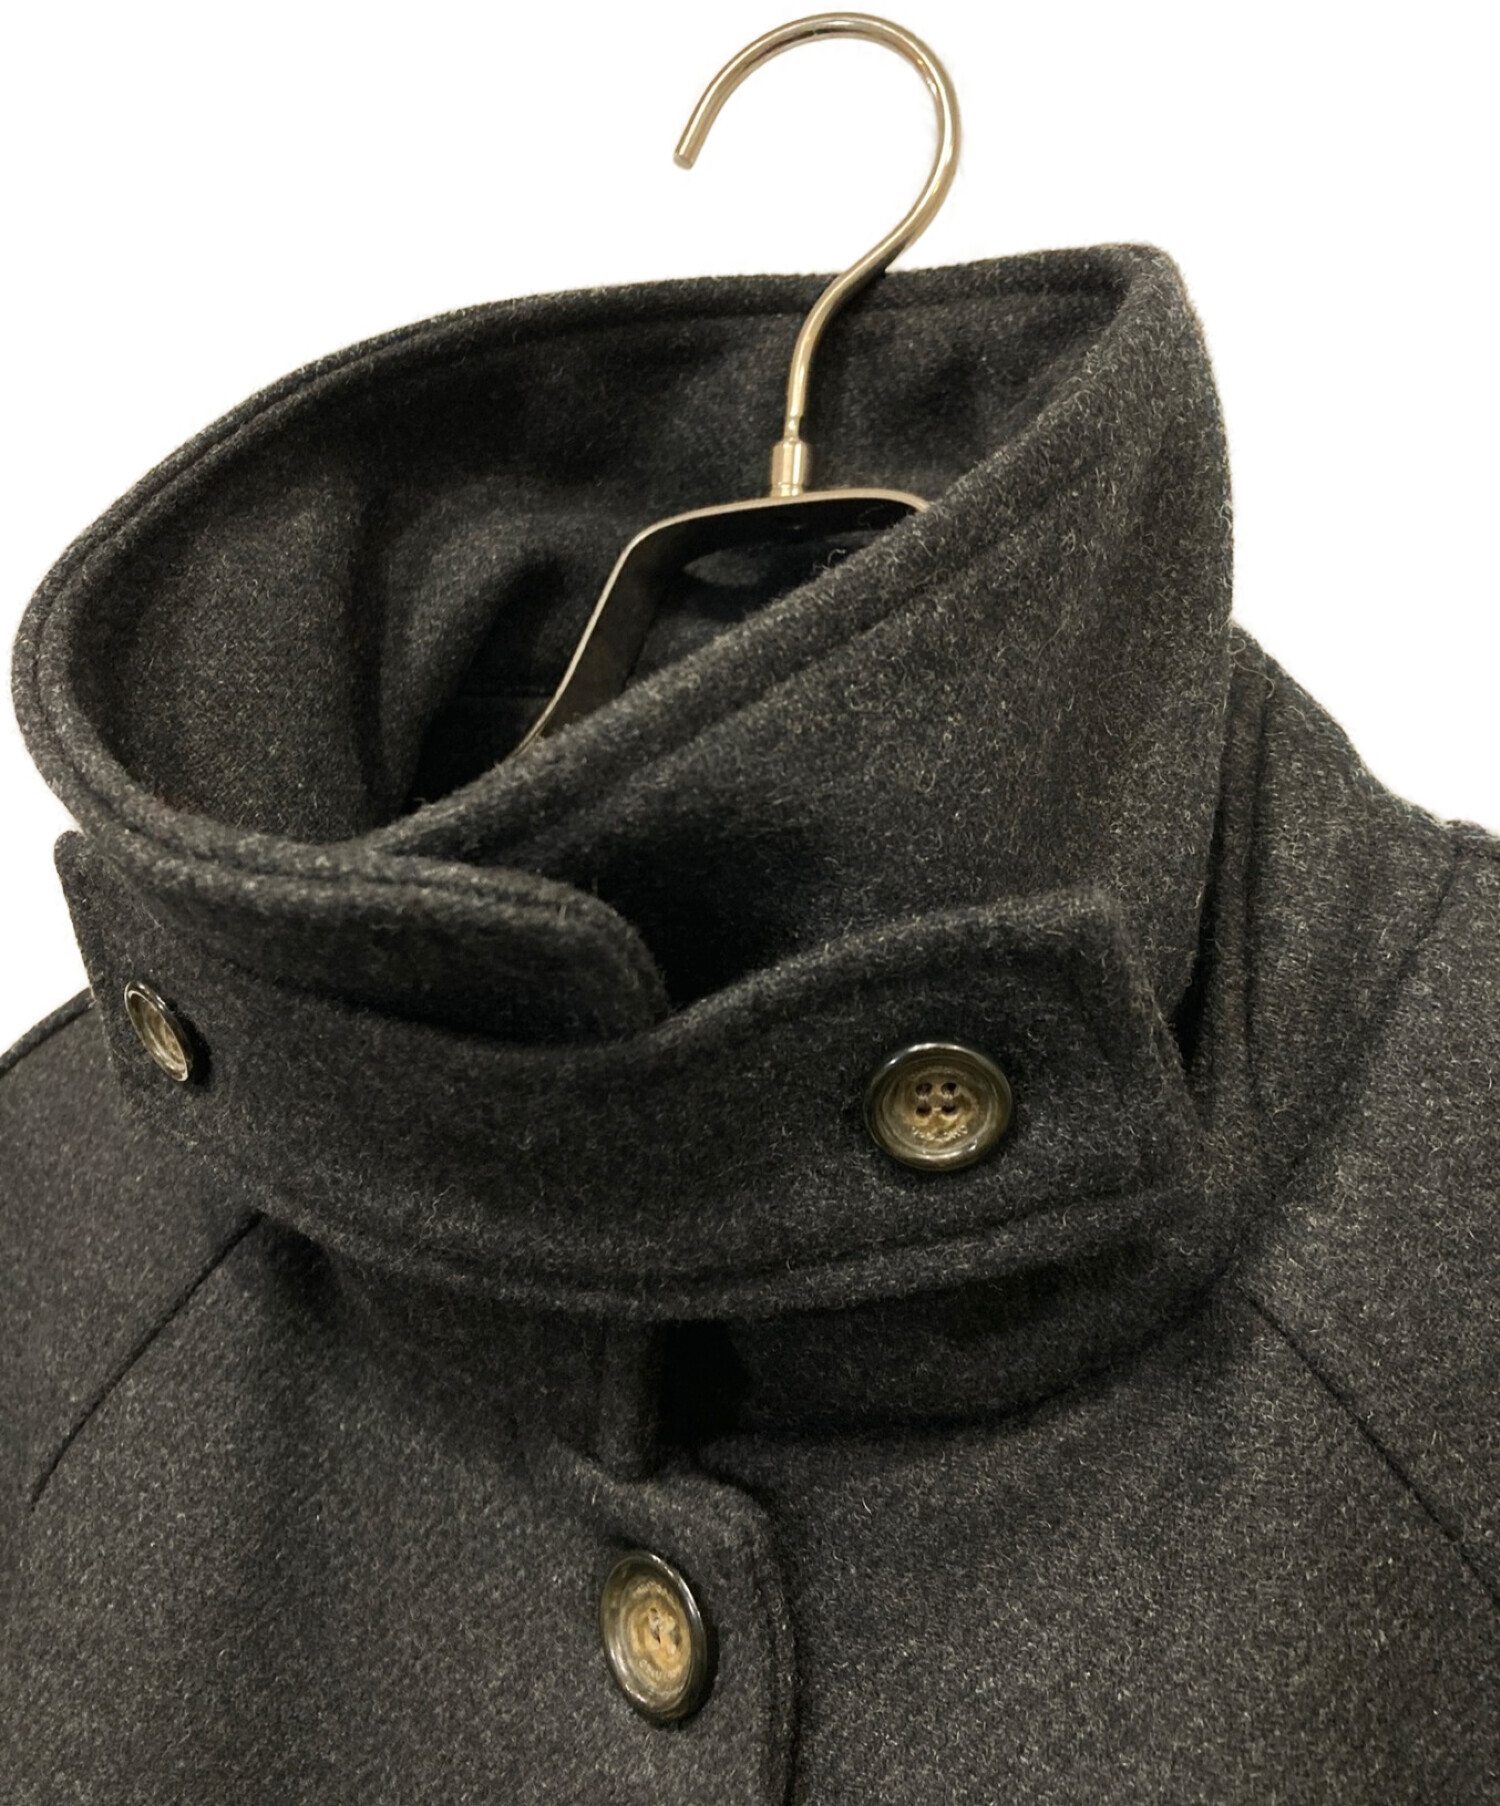 OHOTORO (オオトロ) Dublin Coat ステンカラーコート グレー サイズ:サイズ表記なし